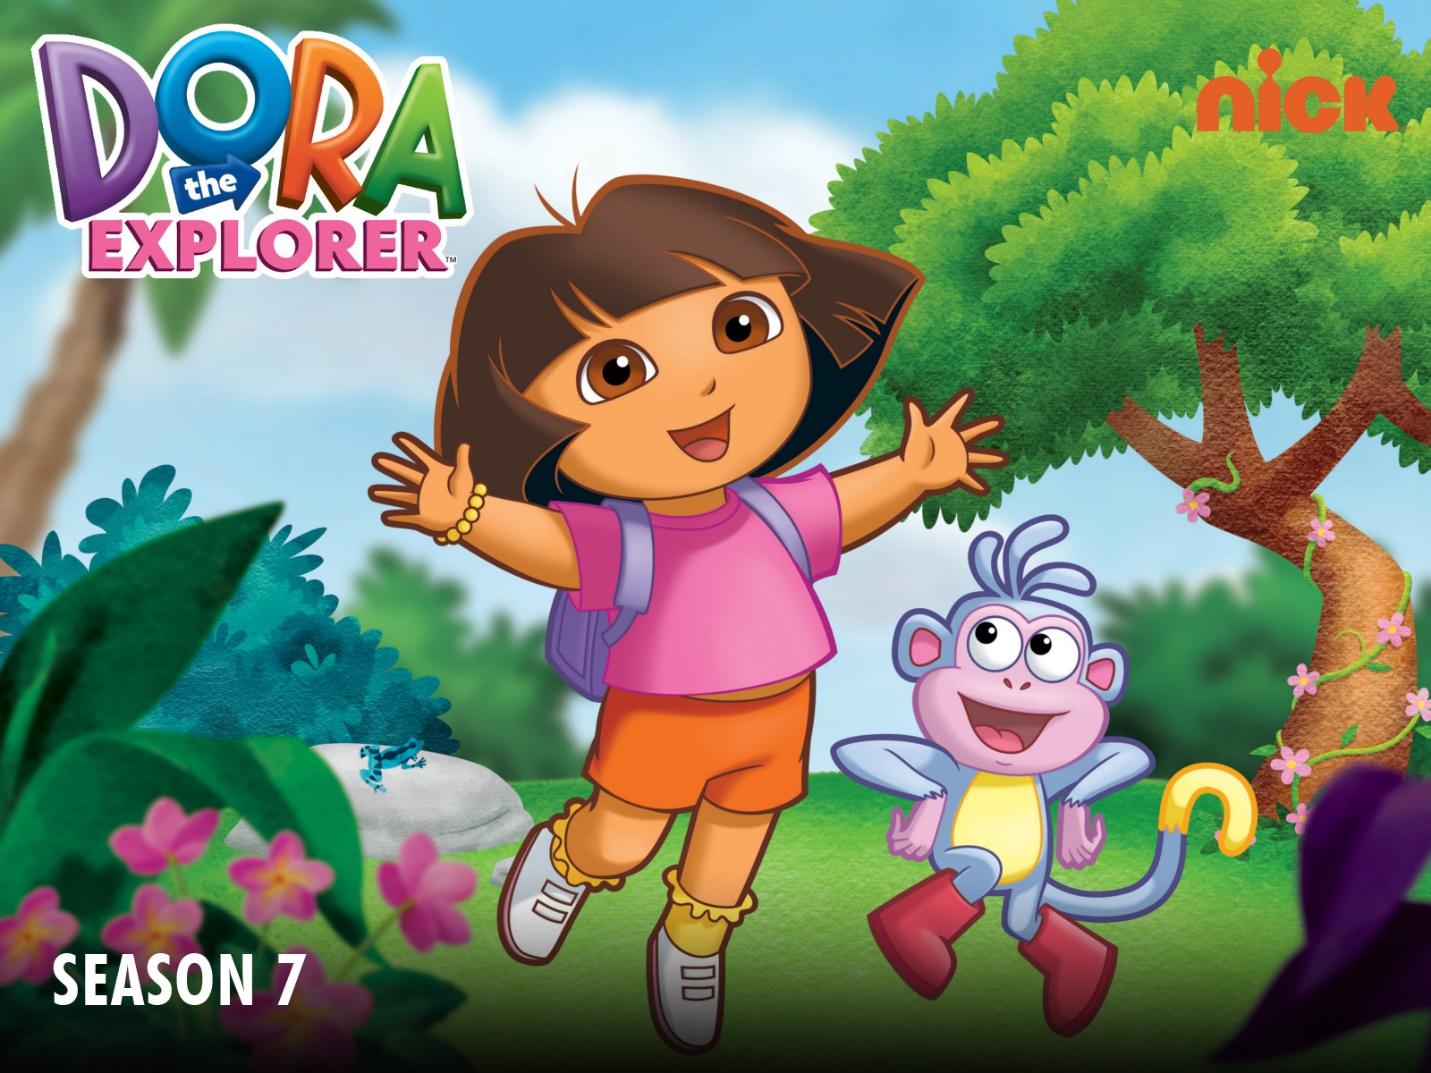 7. Dora the Explorer 